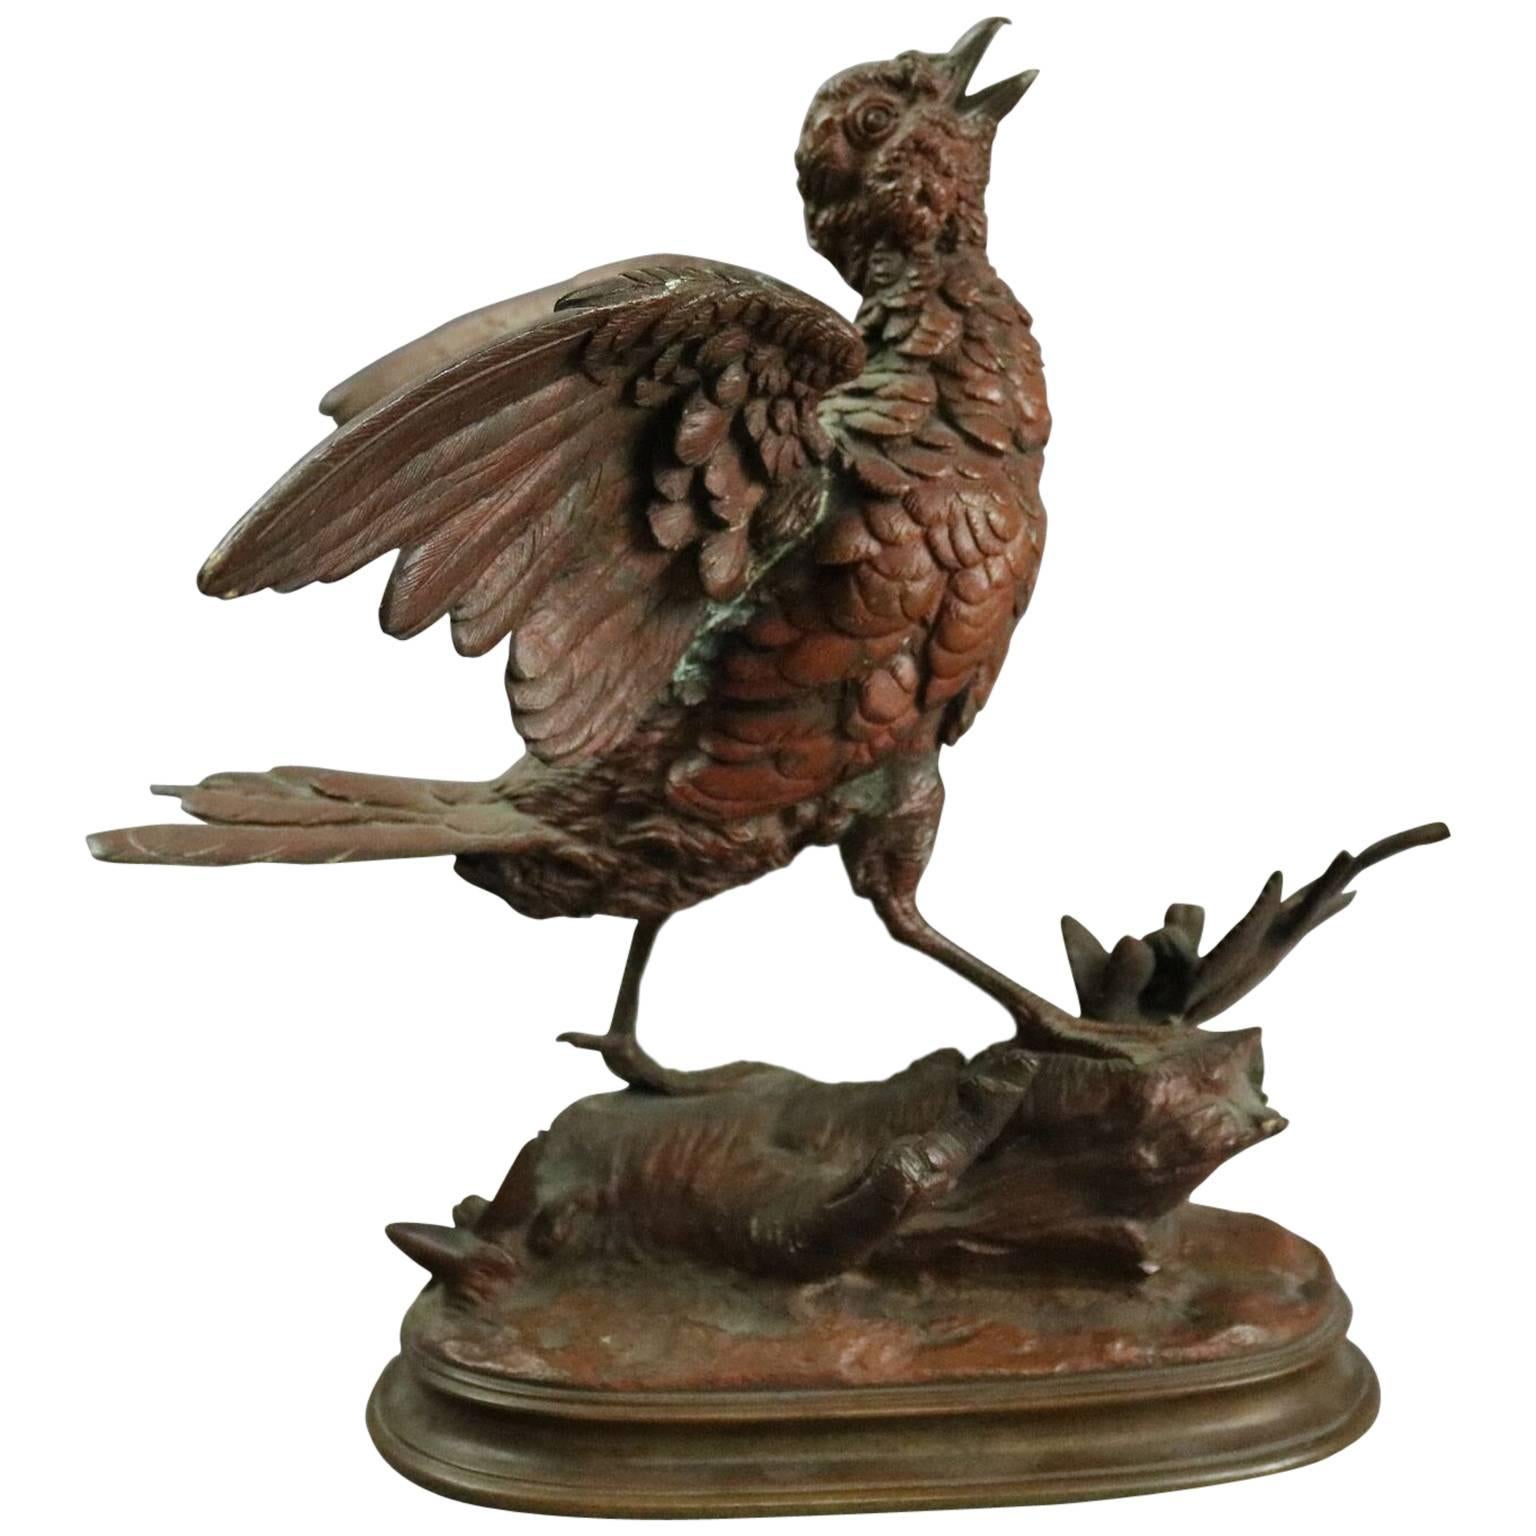 Antique French Bronze Song Bird Sculpture by E. Delabrierre, circa 1880